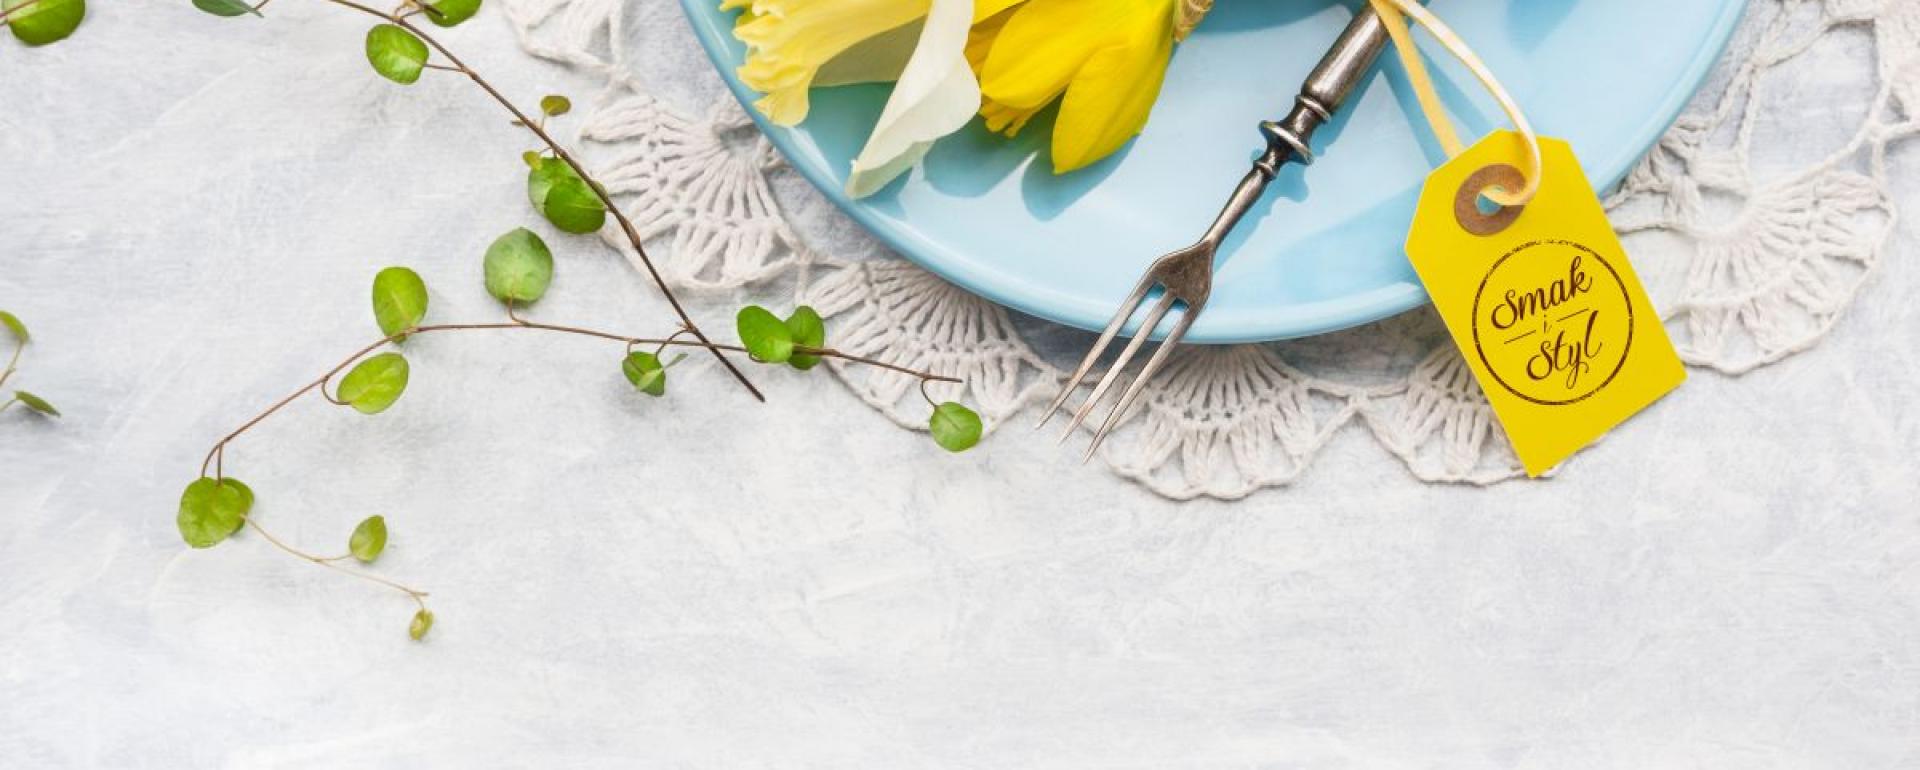 Wiosenne dekoracje na Twoim talerzu